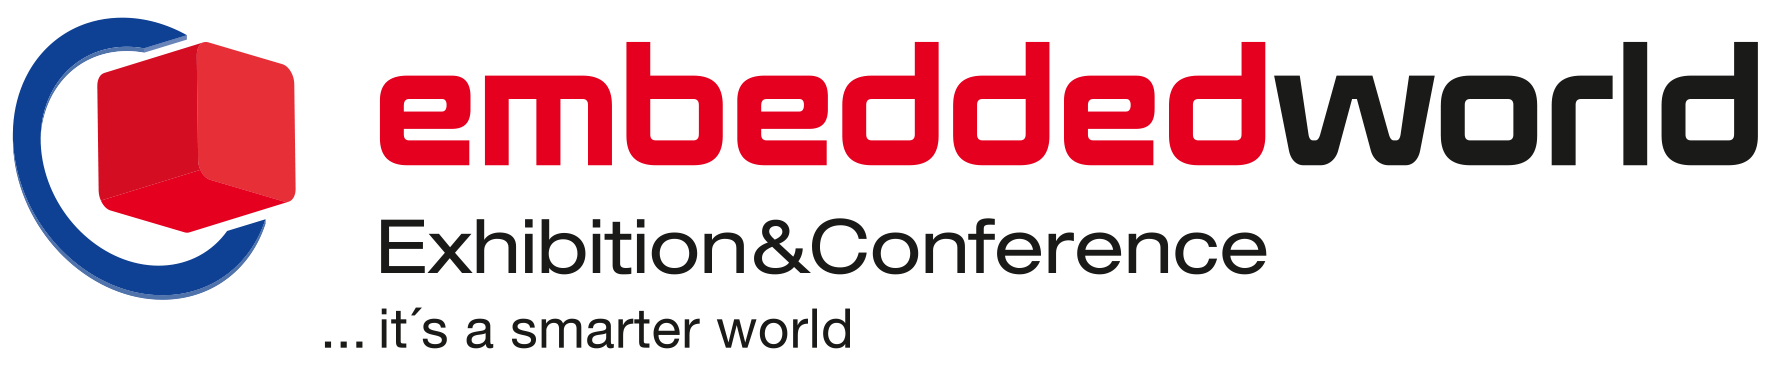 Embedded World Messe & Konferenzen